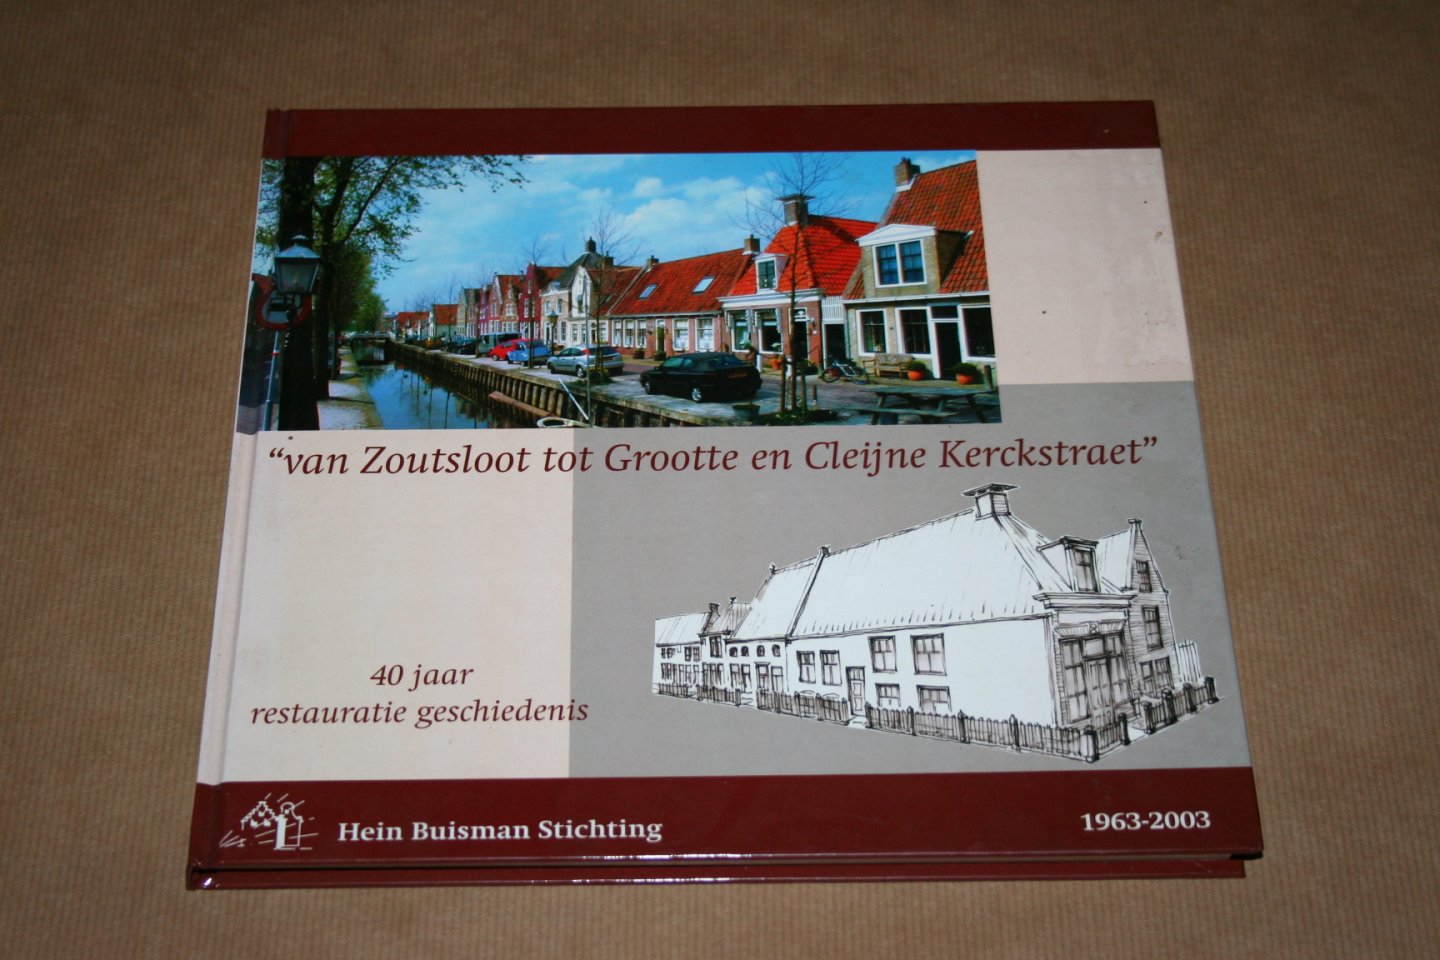  - Van Zoutsloot tot Grootte en Cleijne Kerckstraet - 40 jaar restauratiegeschiedenis Harlingen